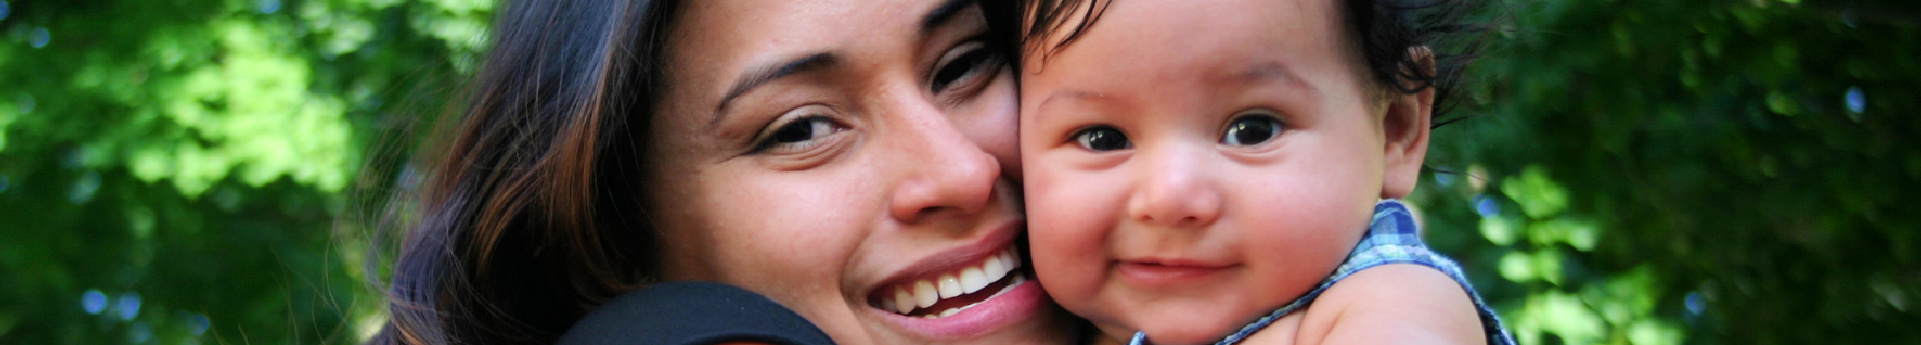 Ecuadorian mom and infant close up photo